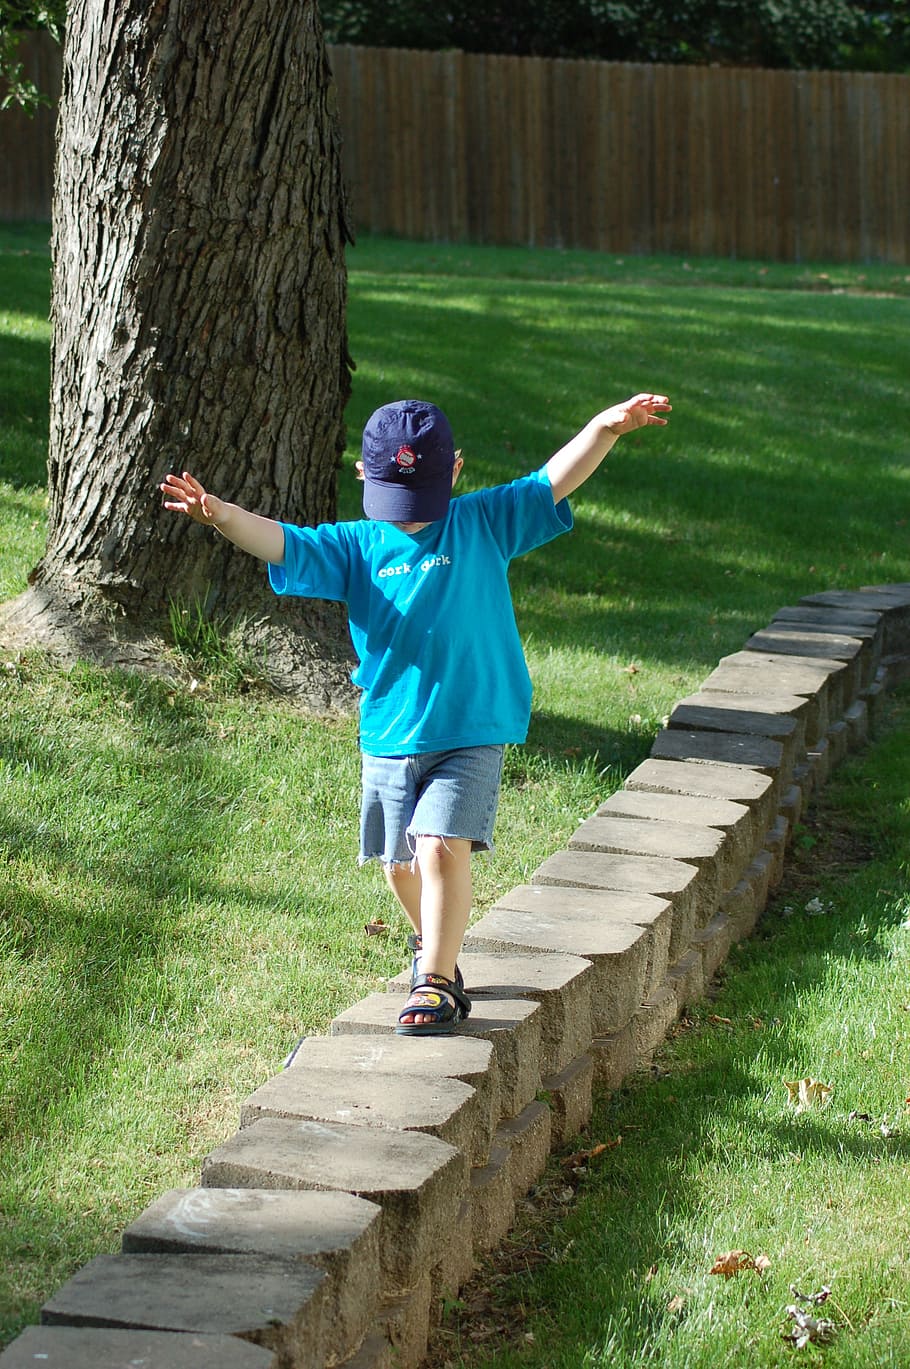 muro de piedra, niño, caminar, equilibrio, gorra, planta, infancia, una persona, tronco de árbol, árbol